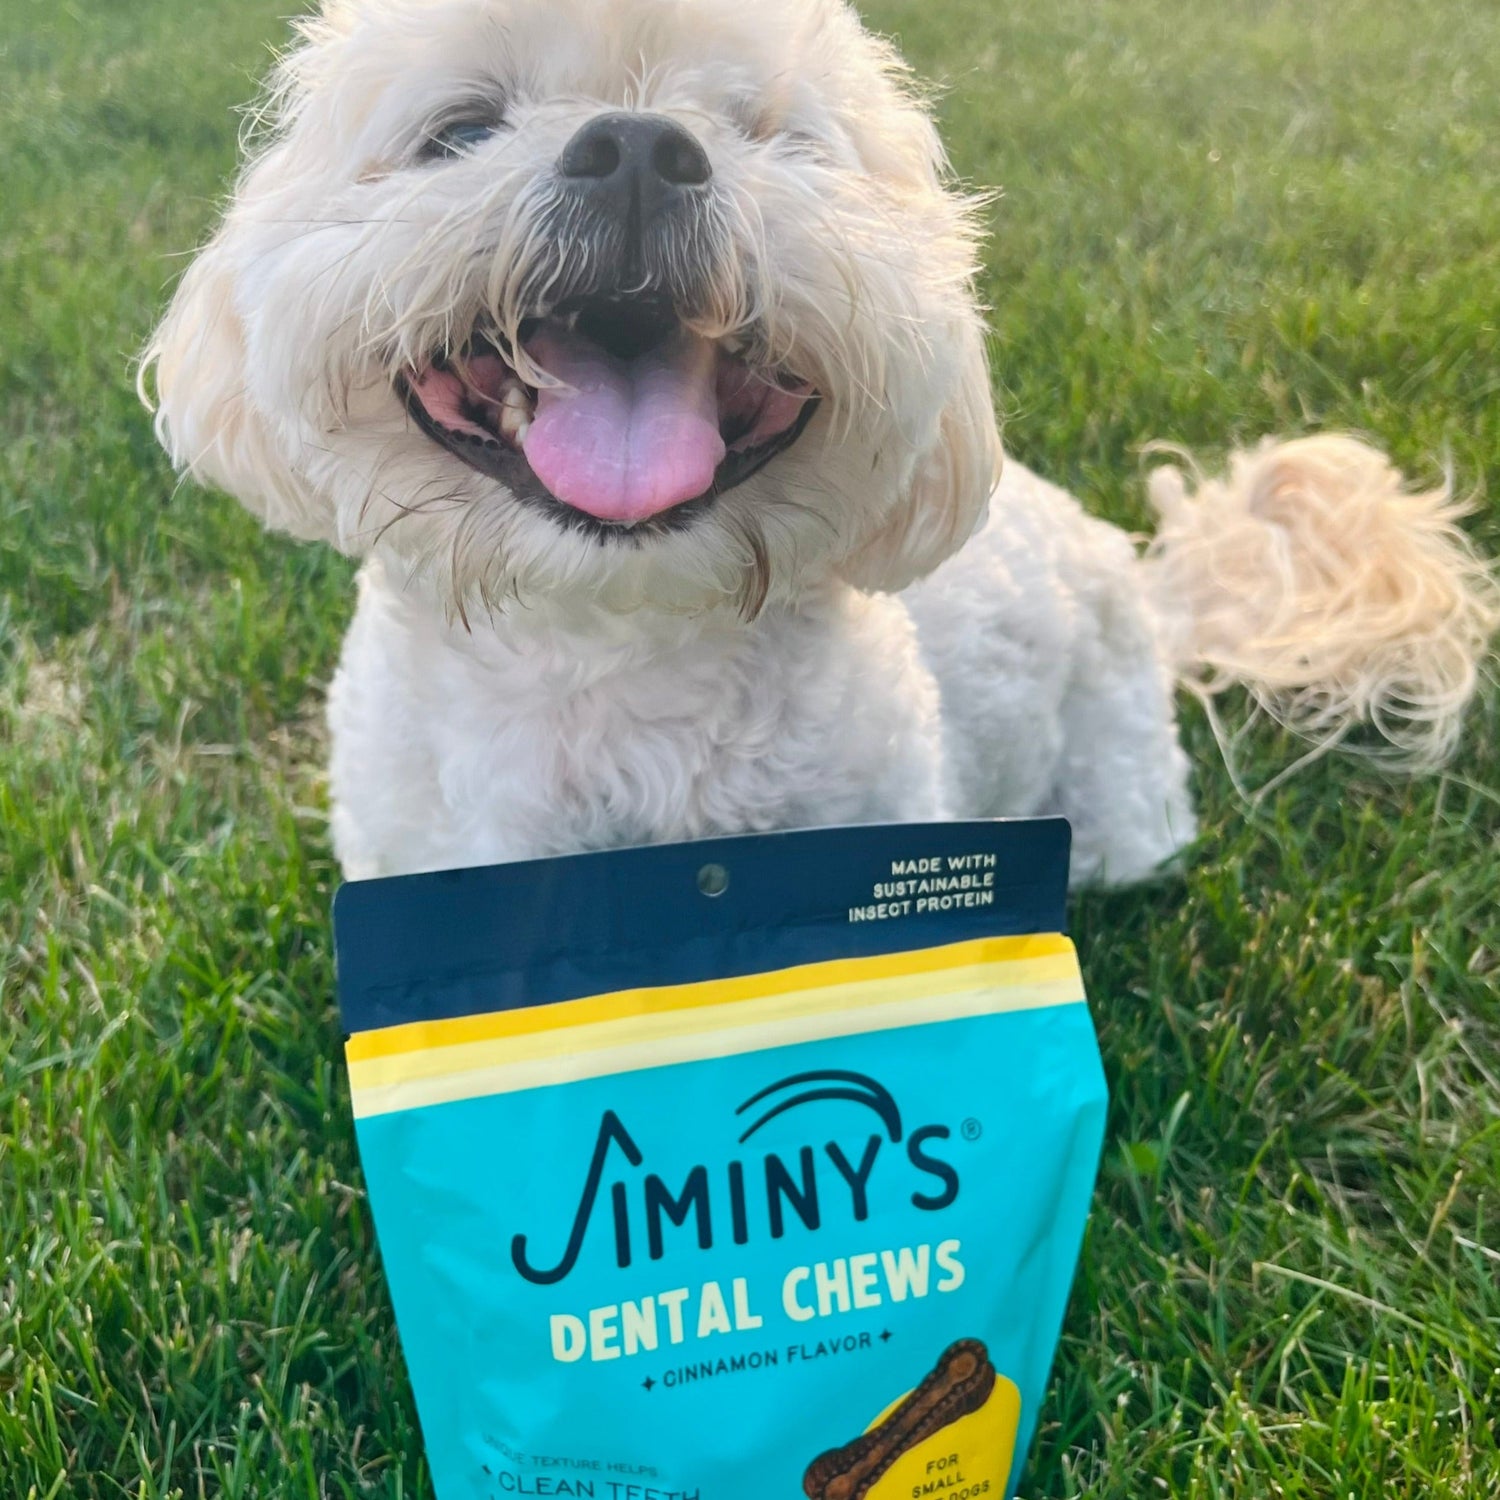 dog with Jiminy's Dog Dental Chews bag